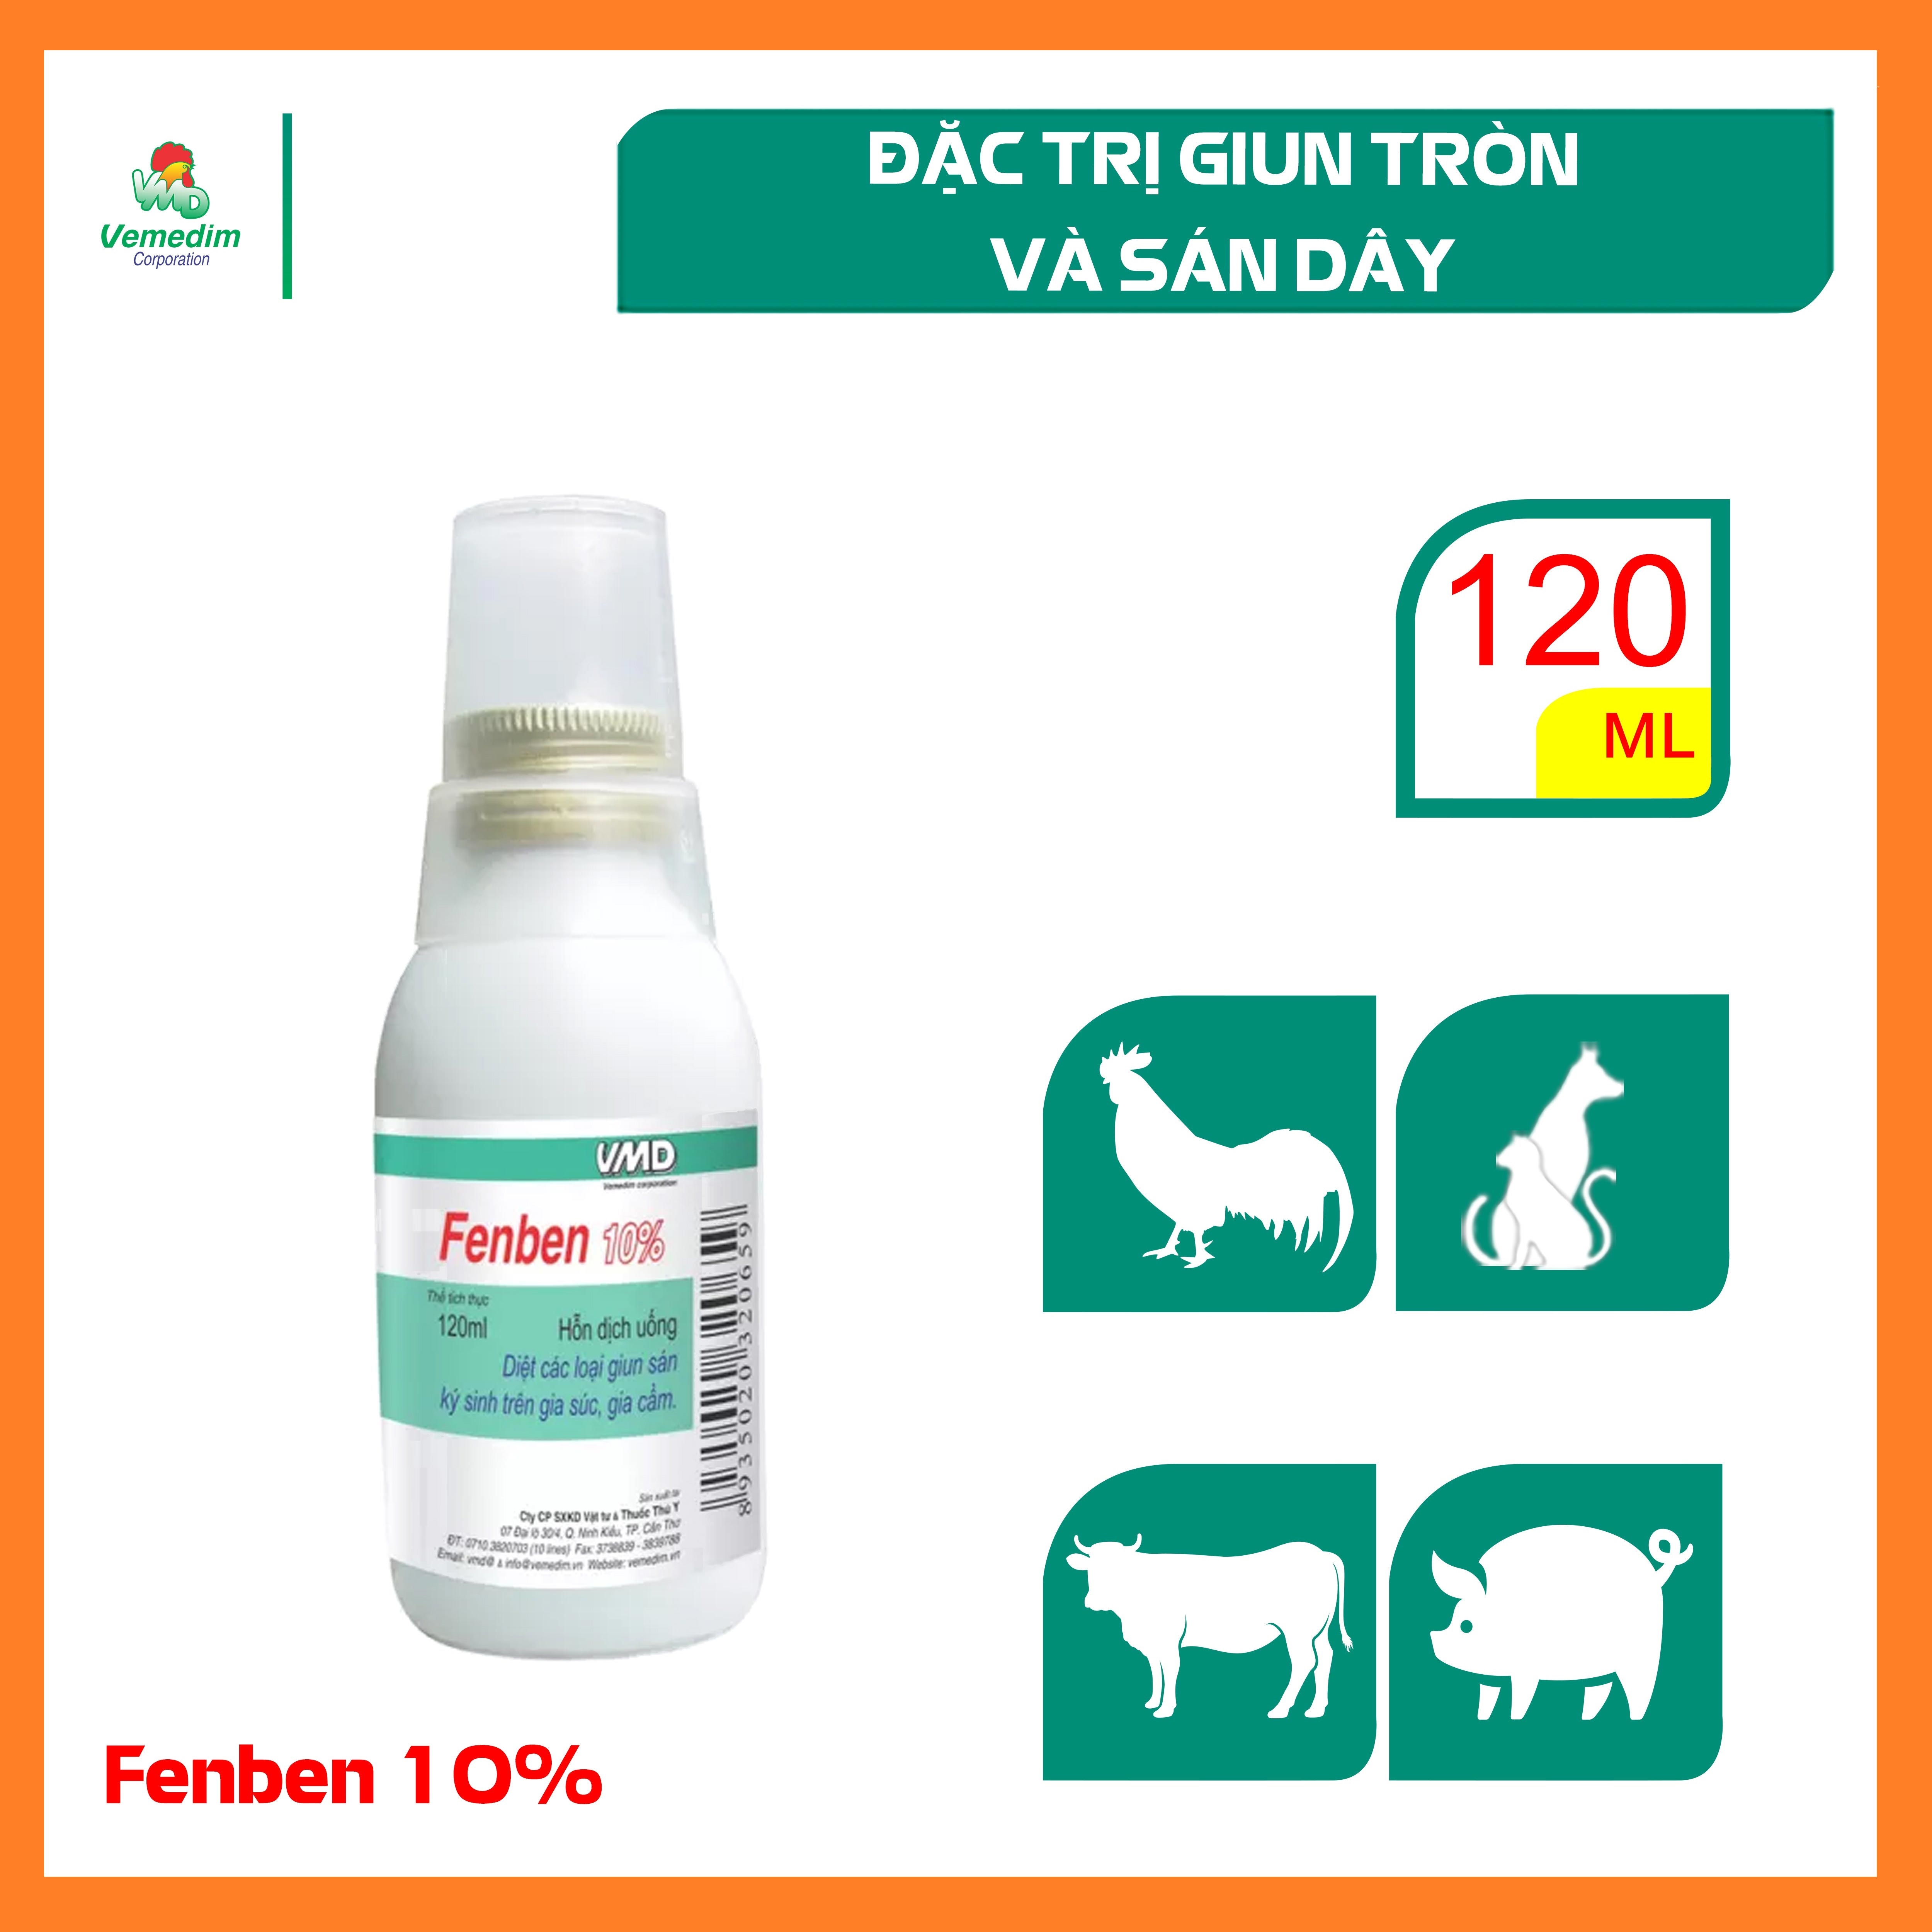 Fenben 10% (Fenbendazole) Đặc trị giun và sán cho chó, mèo, dùng được cho chó, mèo nhỏ và chó, mèo mang thai, Chai 120ml, Sản phẩm Vemedim